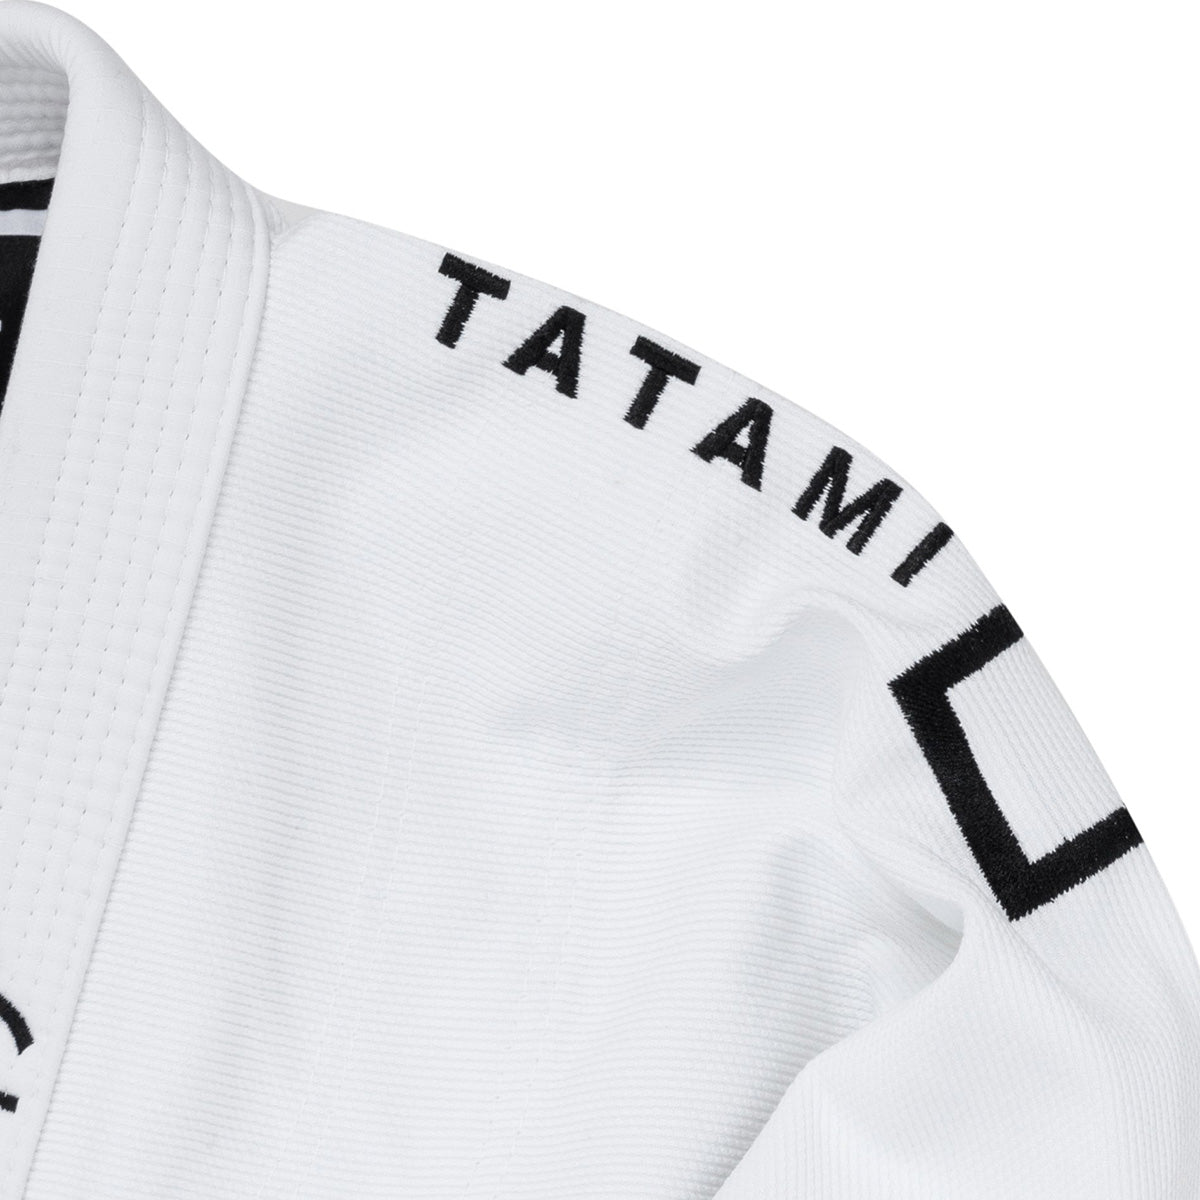 Tatami Fightwear Katakana BJJ Gi - White Tatami Fightwear